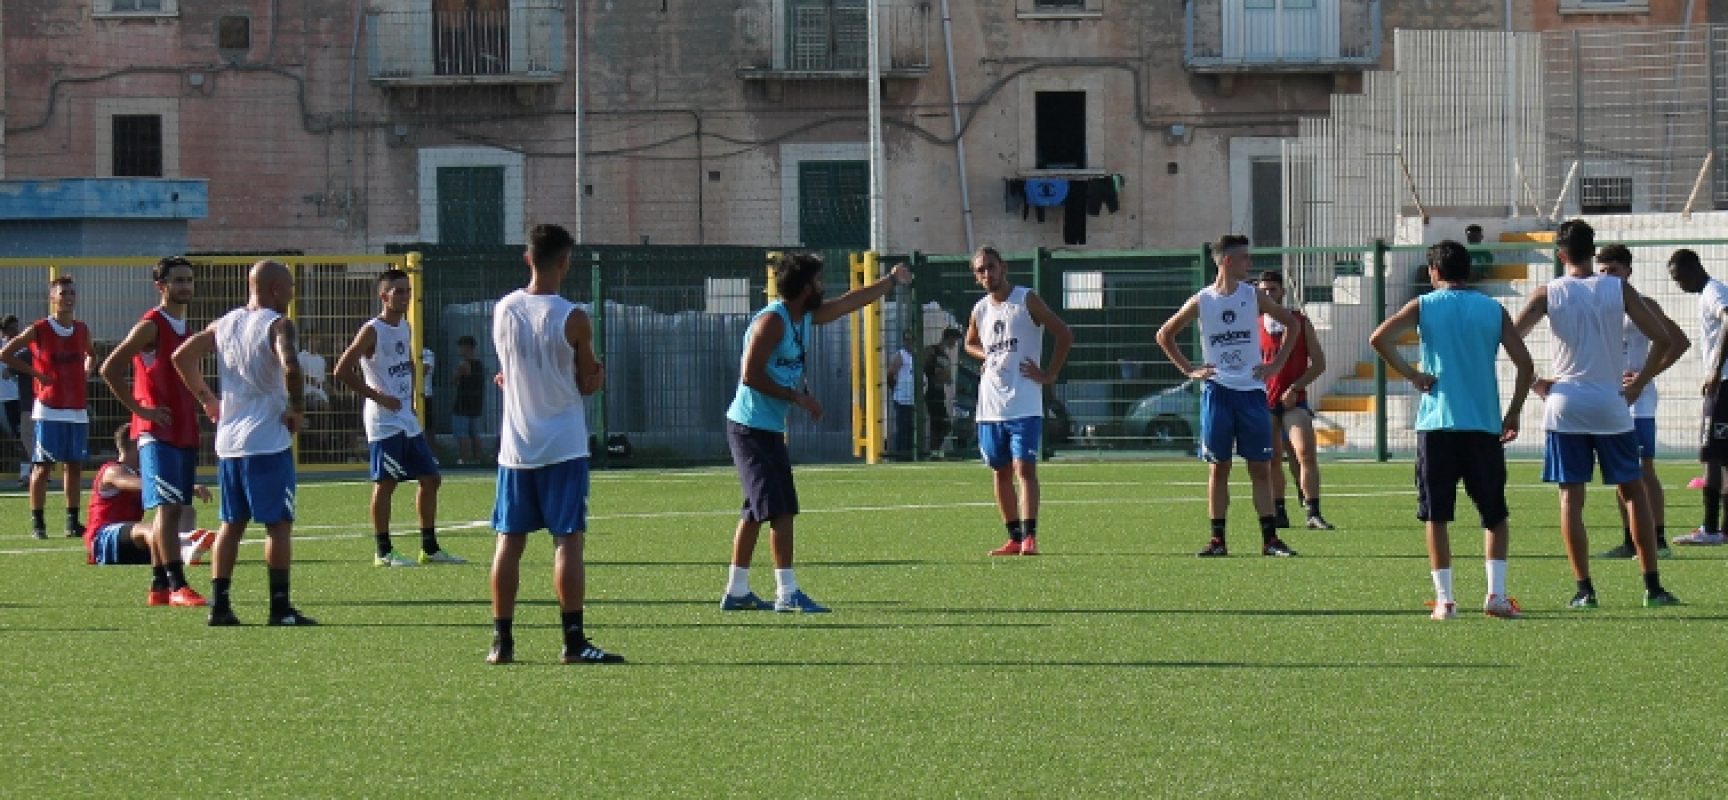 Unione Calcio, inaugurata la nuova stagione con il raduno al “Di Liddo” / FOTO